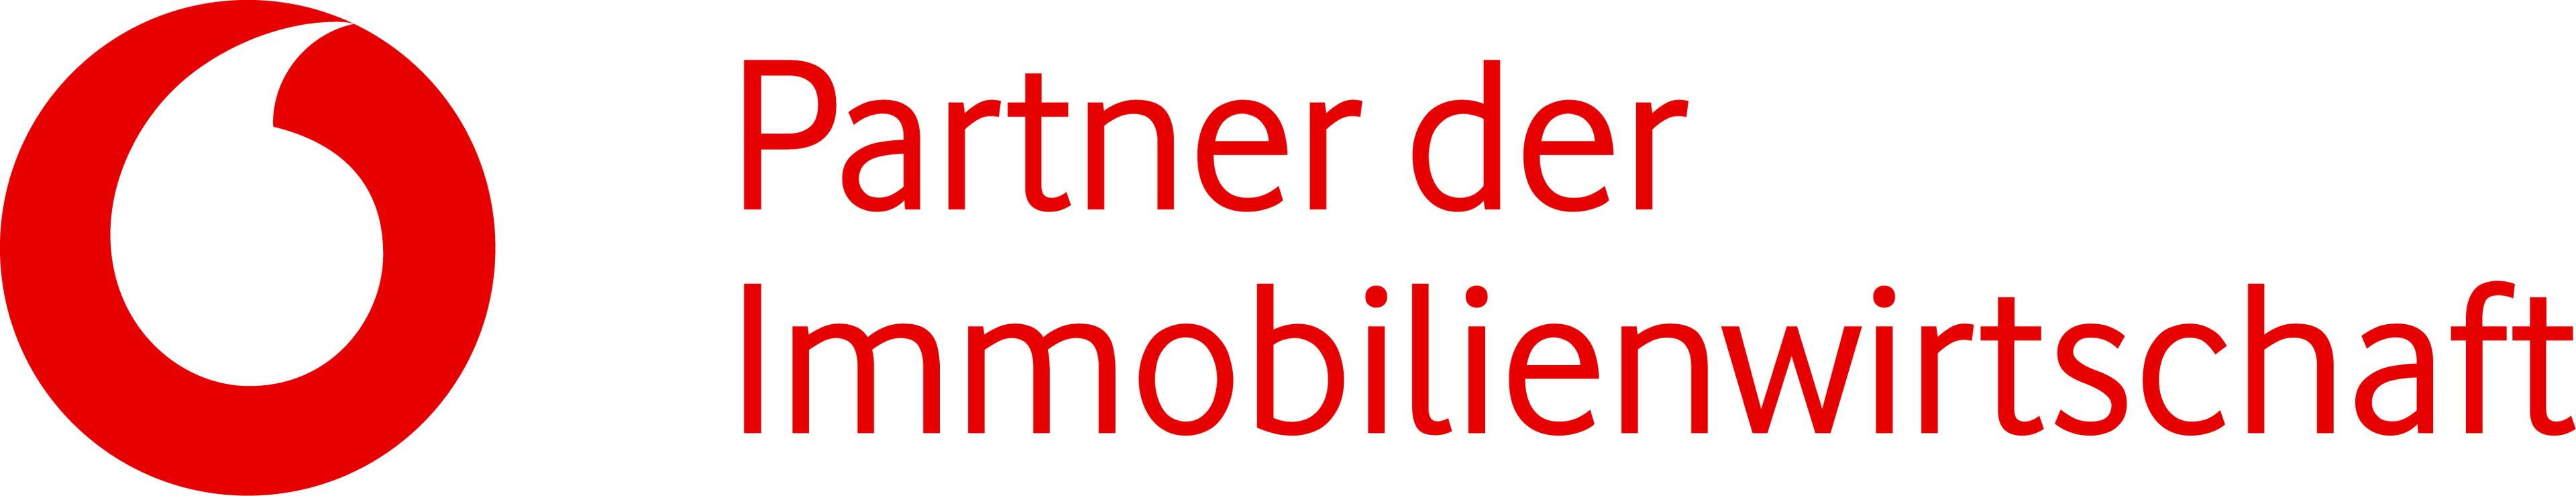 Vodafone Kabel Deutschland GmbH